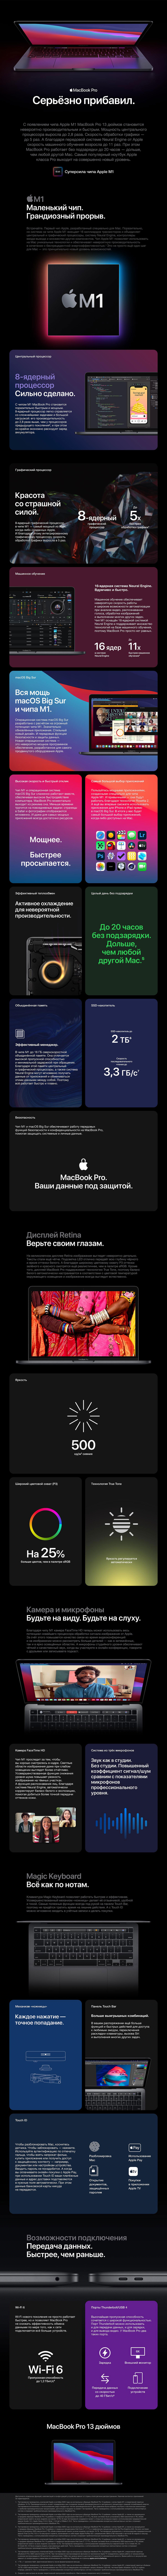 macbook pro.jpg